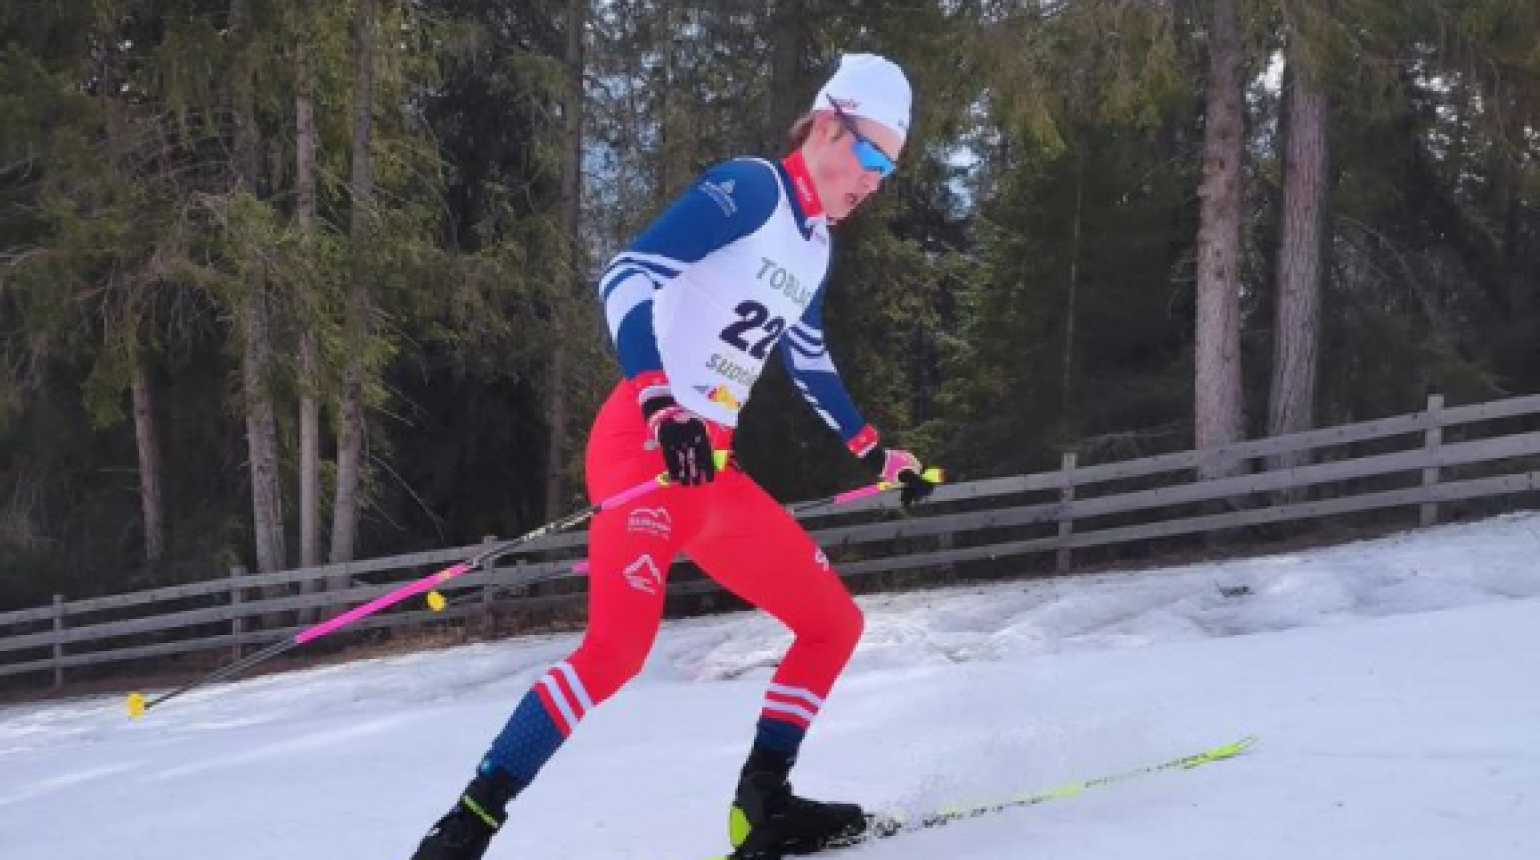 OPA Alpen Cup: Junior Bauer vybojoval v individuálu top 10, Lukeš se mezi muži dvakrát umístil ve dvacítce